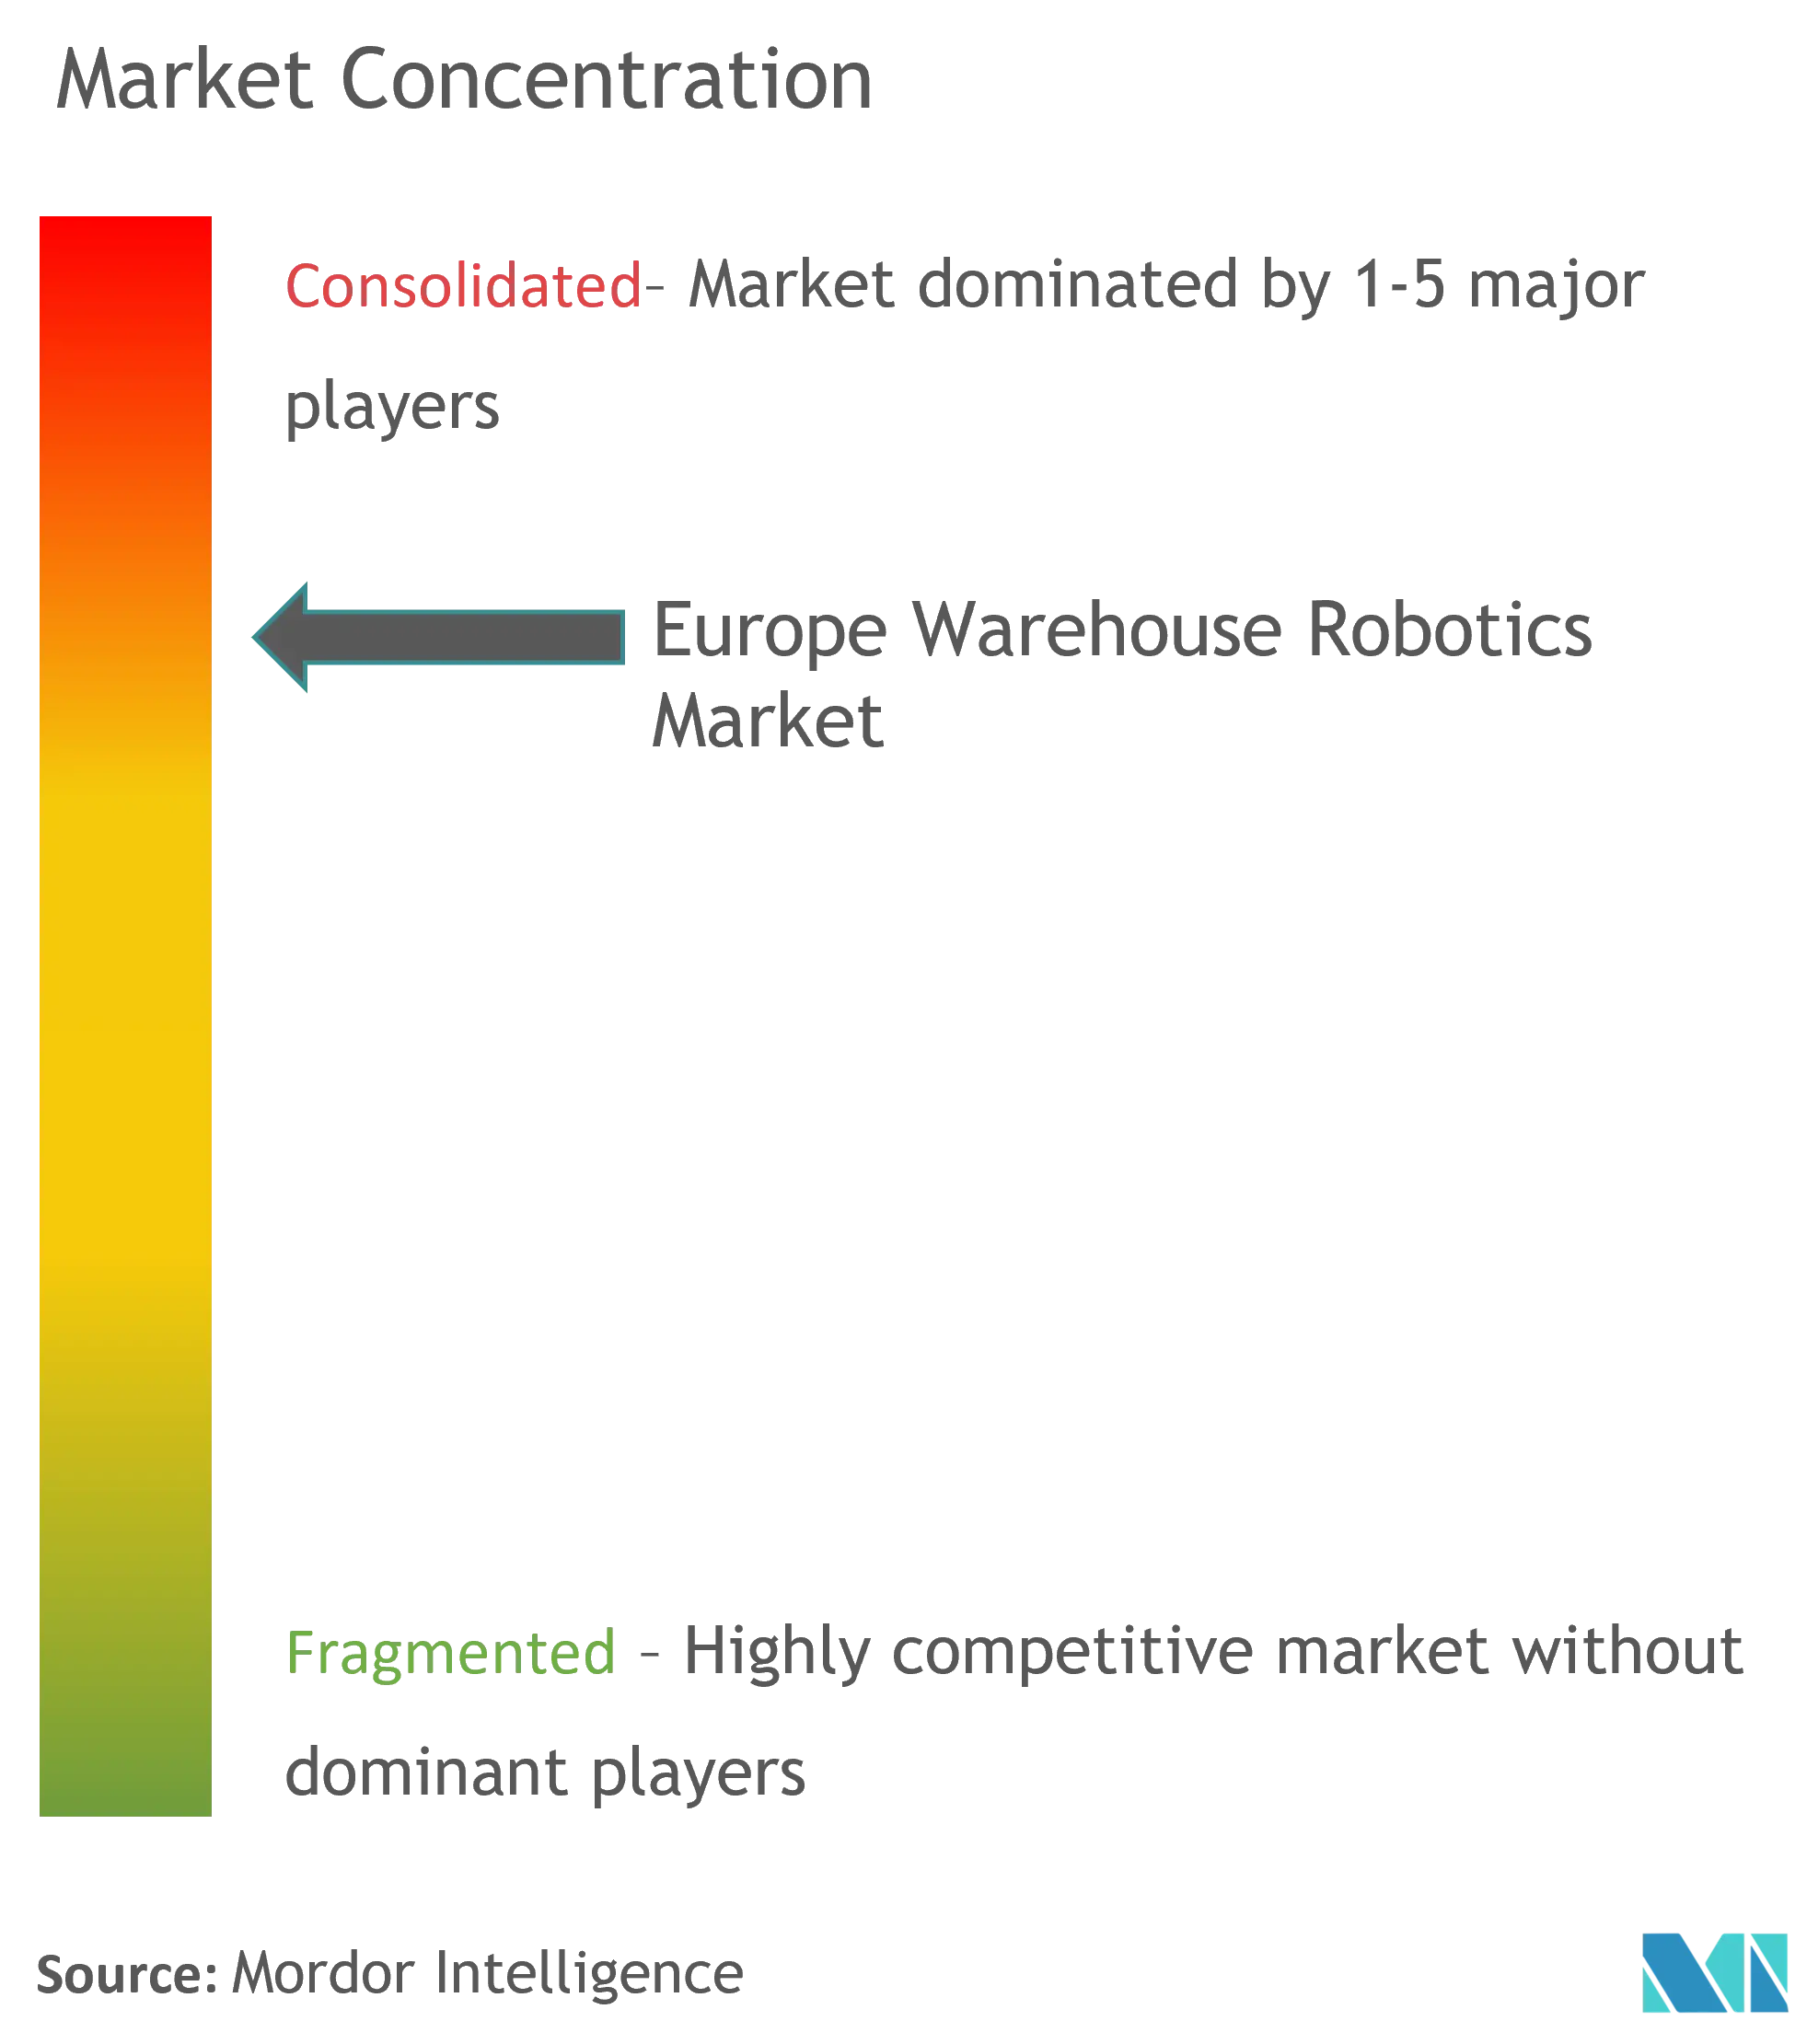 Концентрация рынка складской робототехники в Европе